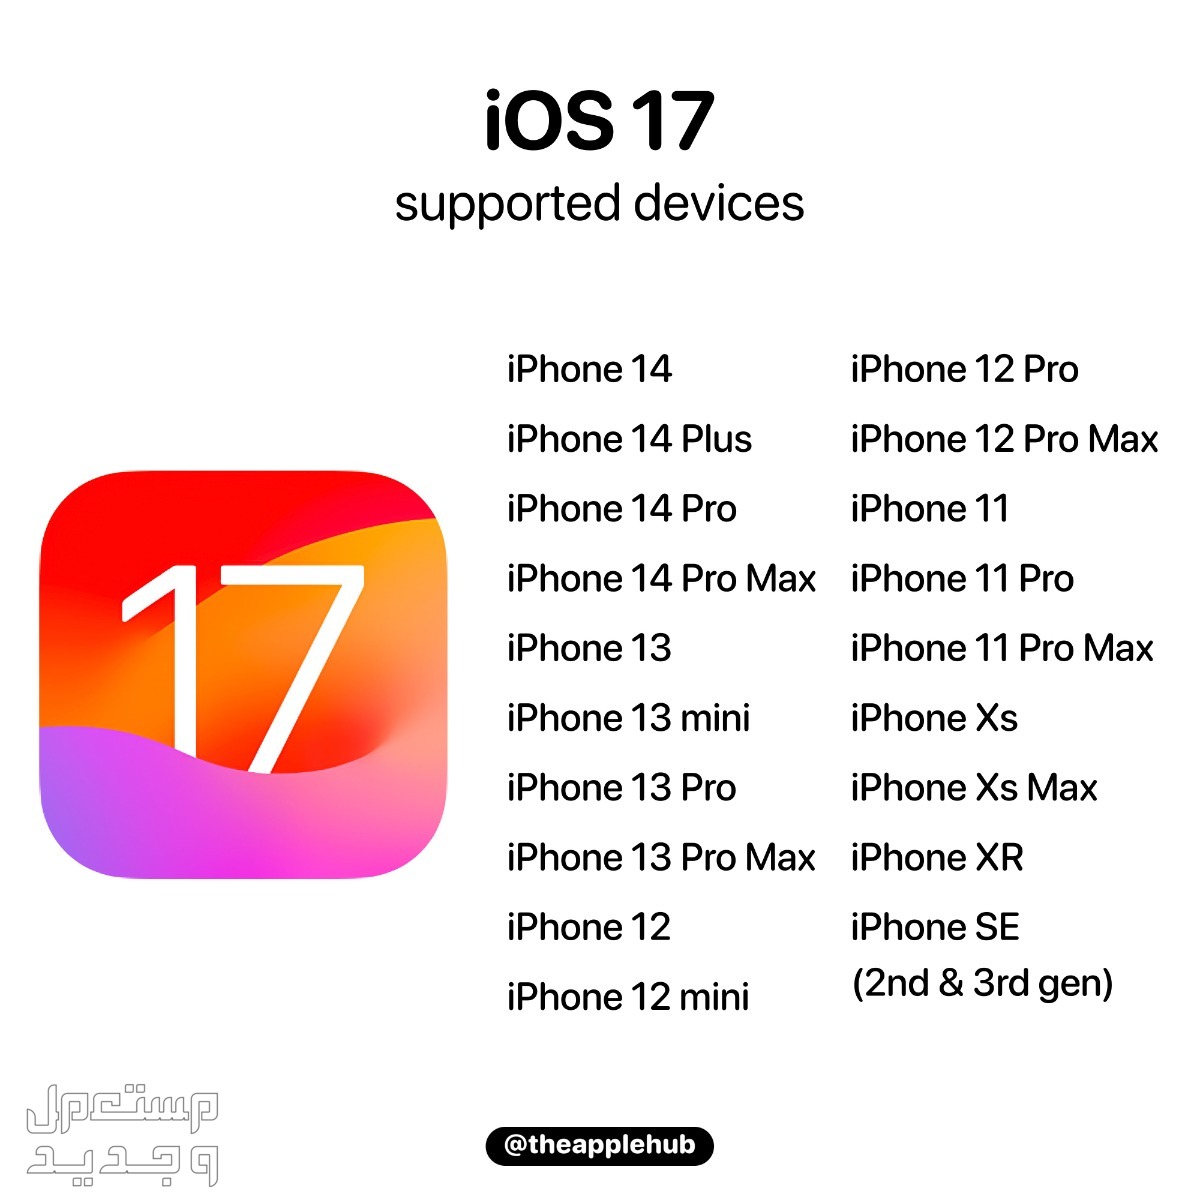 نظام iOS 17 لهواتف ايفون بمميزات جديدة تعرف عليها في فلسطين